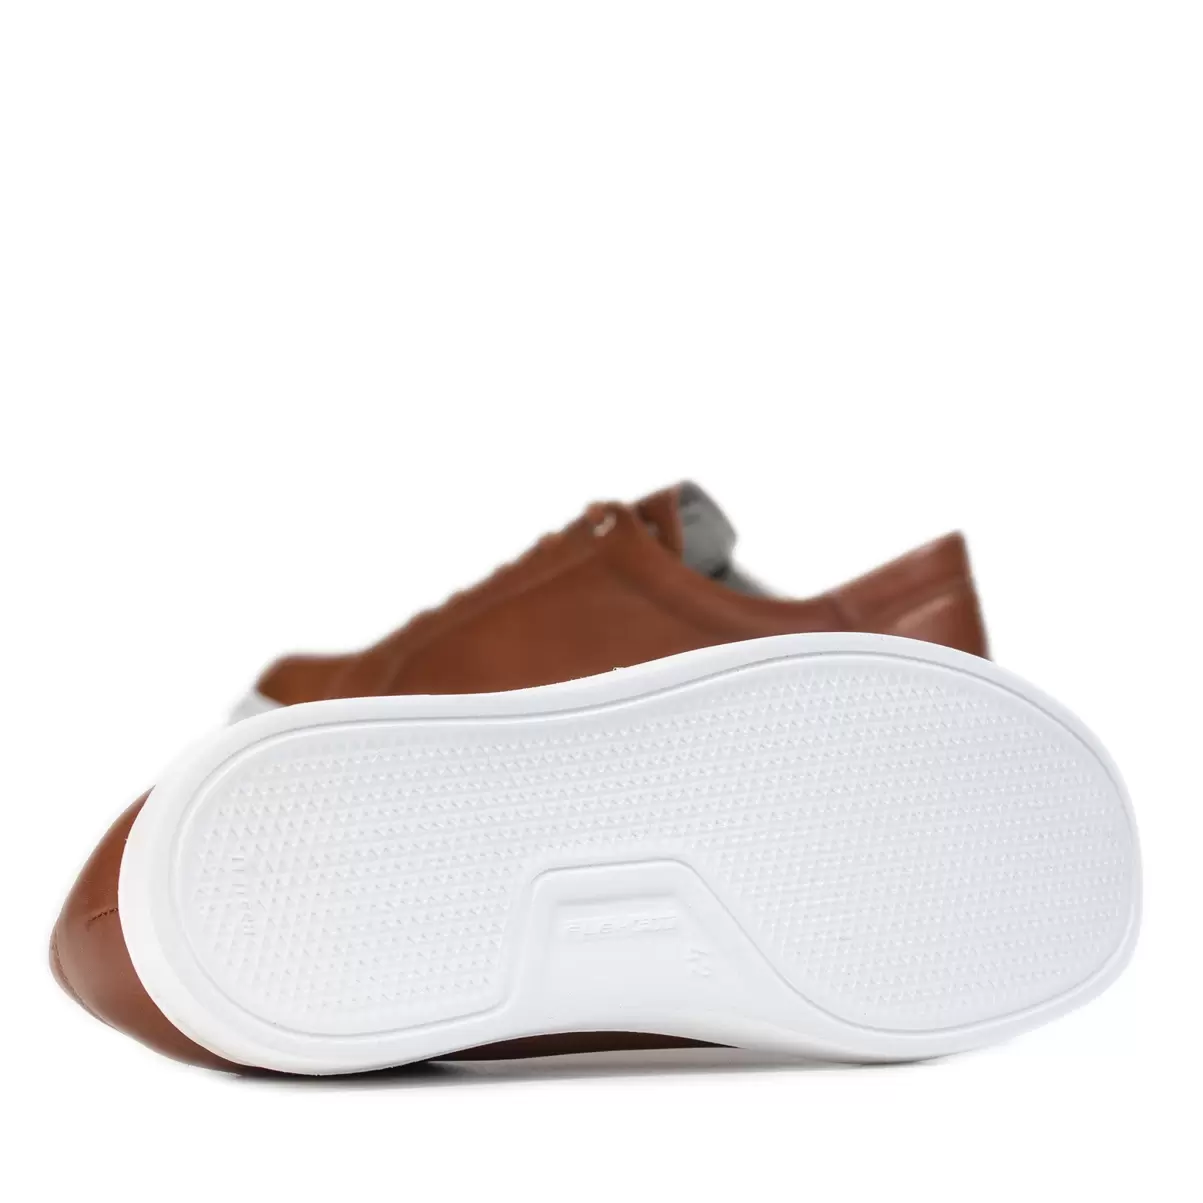 Men Tan Soft Nappa/Tan Laces/Tan St. Savi Men's Pomar+ Sneakers Sneakers Pomarfin Oy - 3